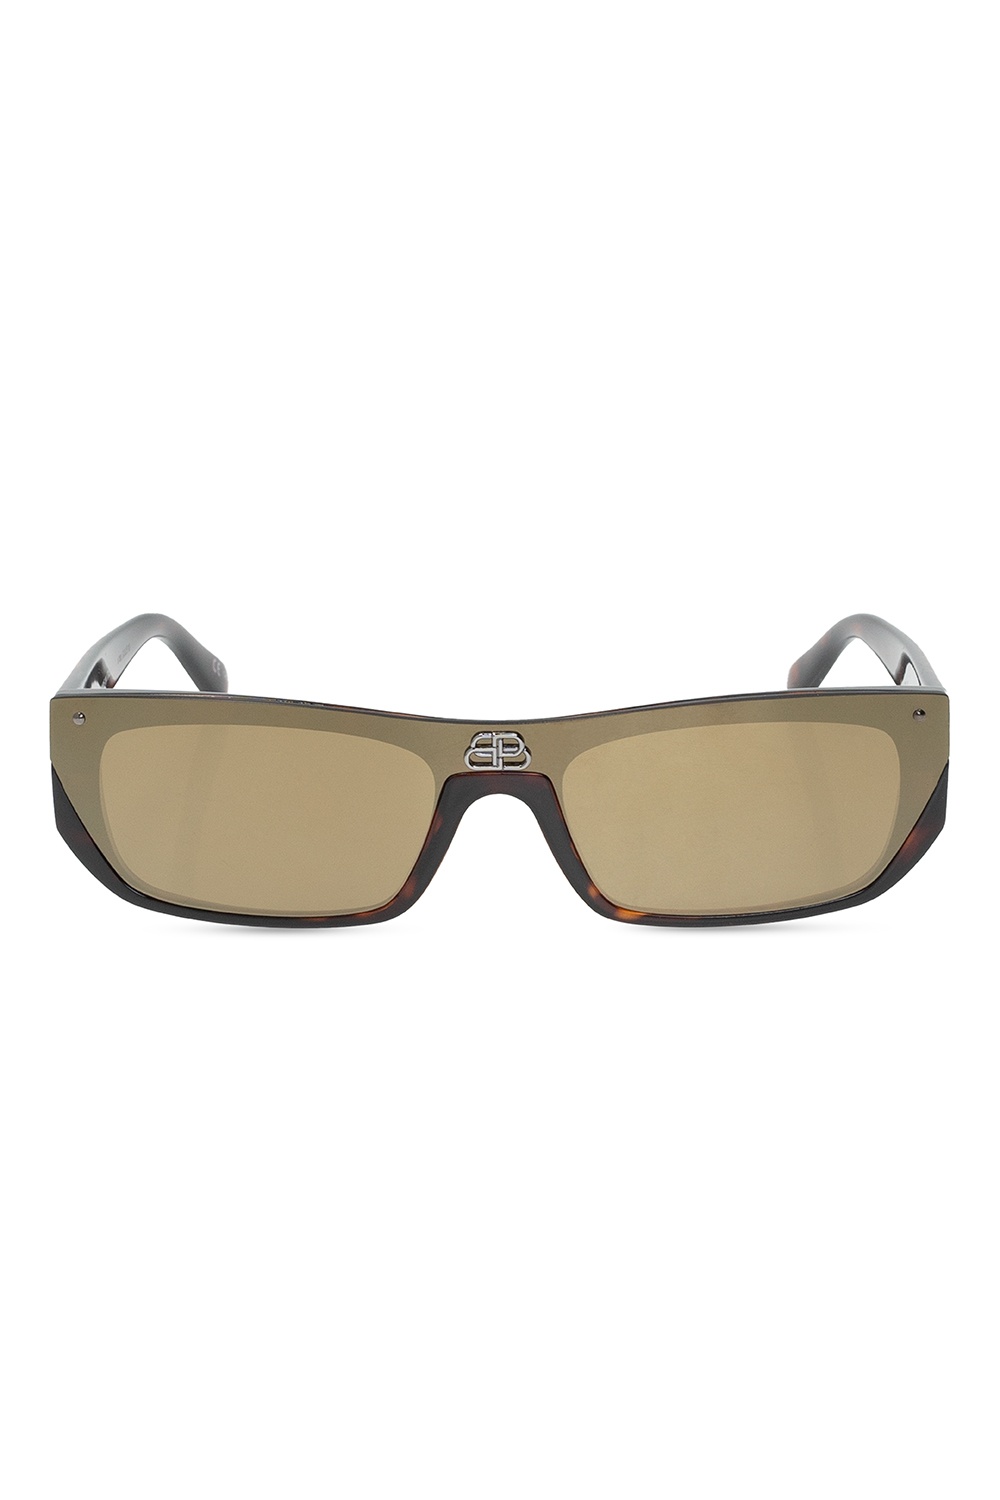 Balenciaga AR6112JM 300187 sunglasses